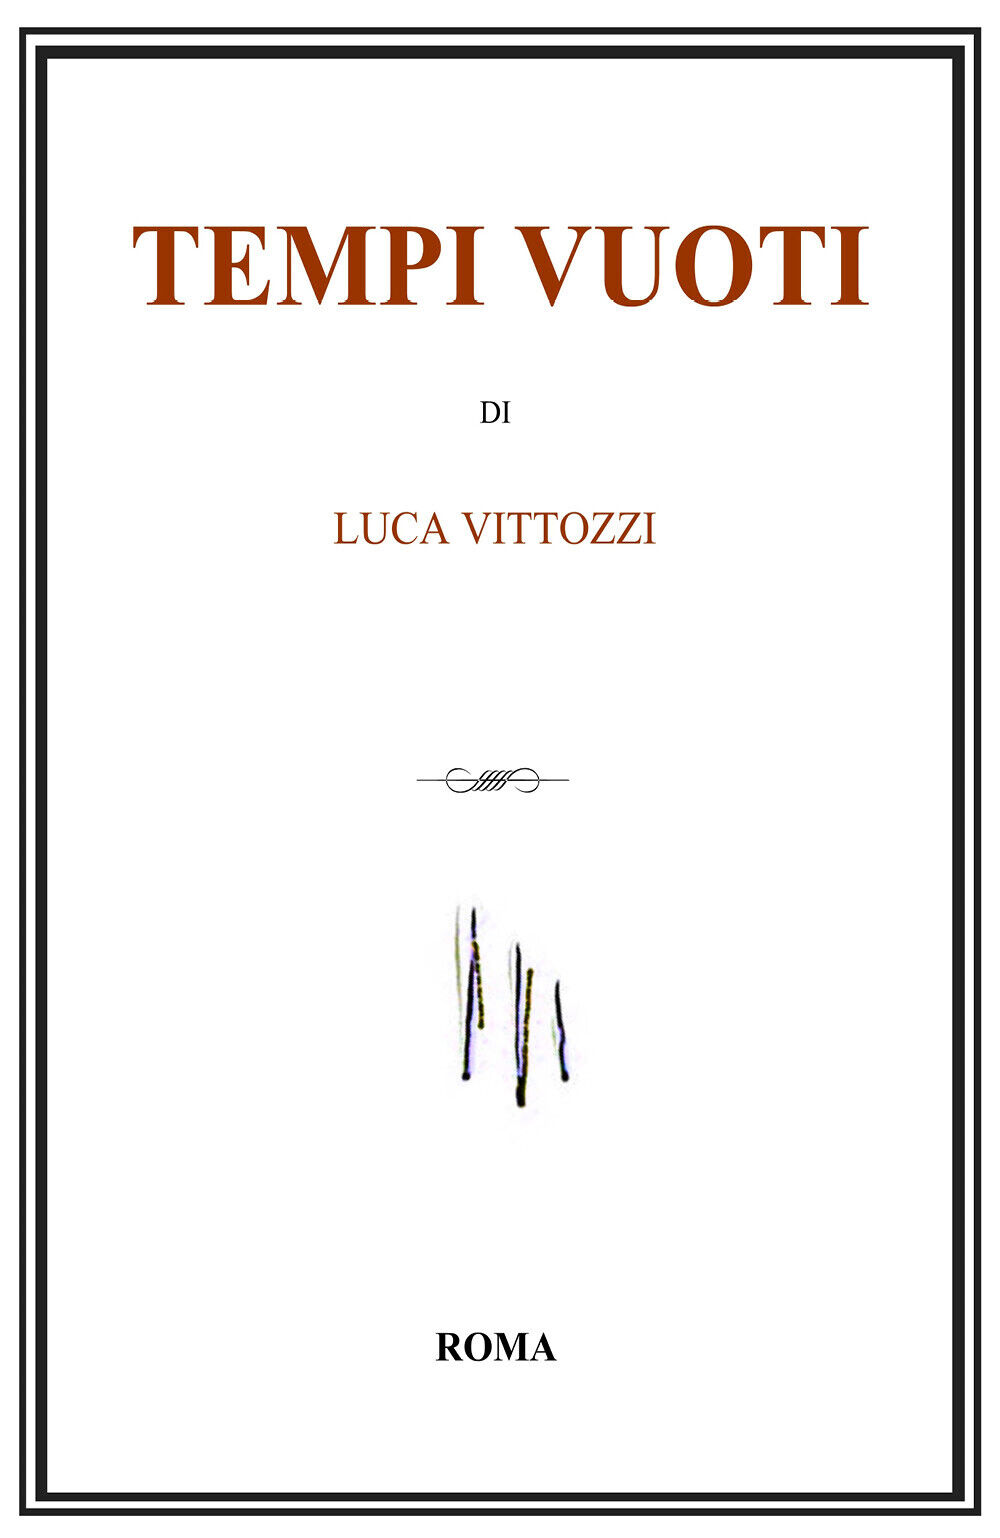 Tempi vuoti di Luca Vittozzi,  2020,  Youcanprint